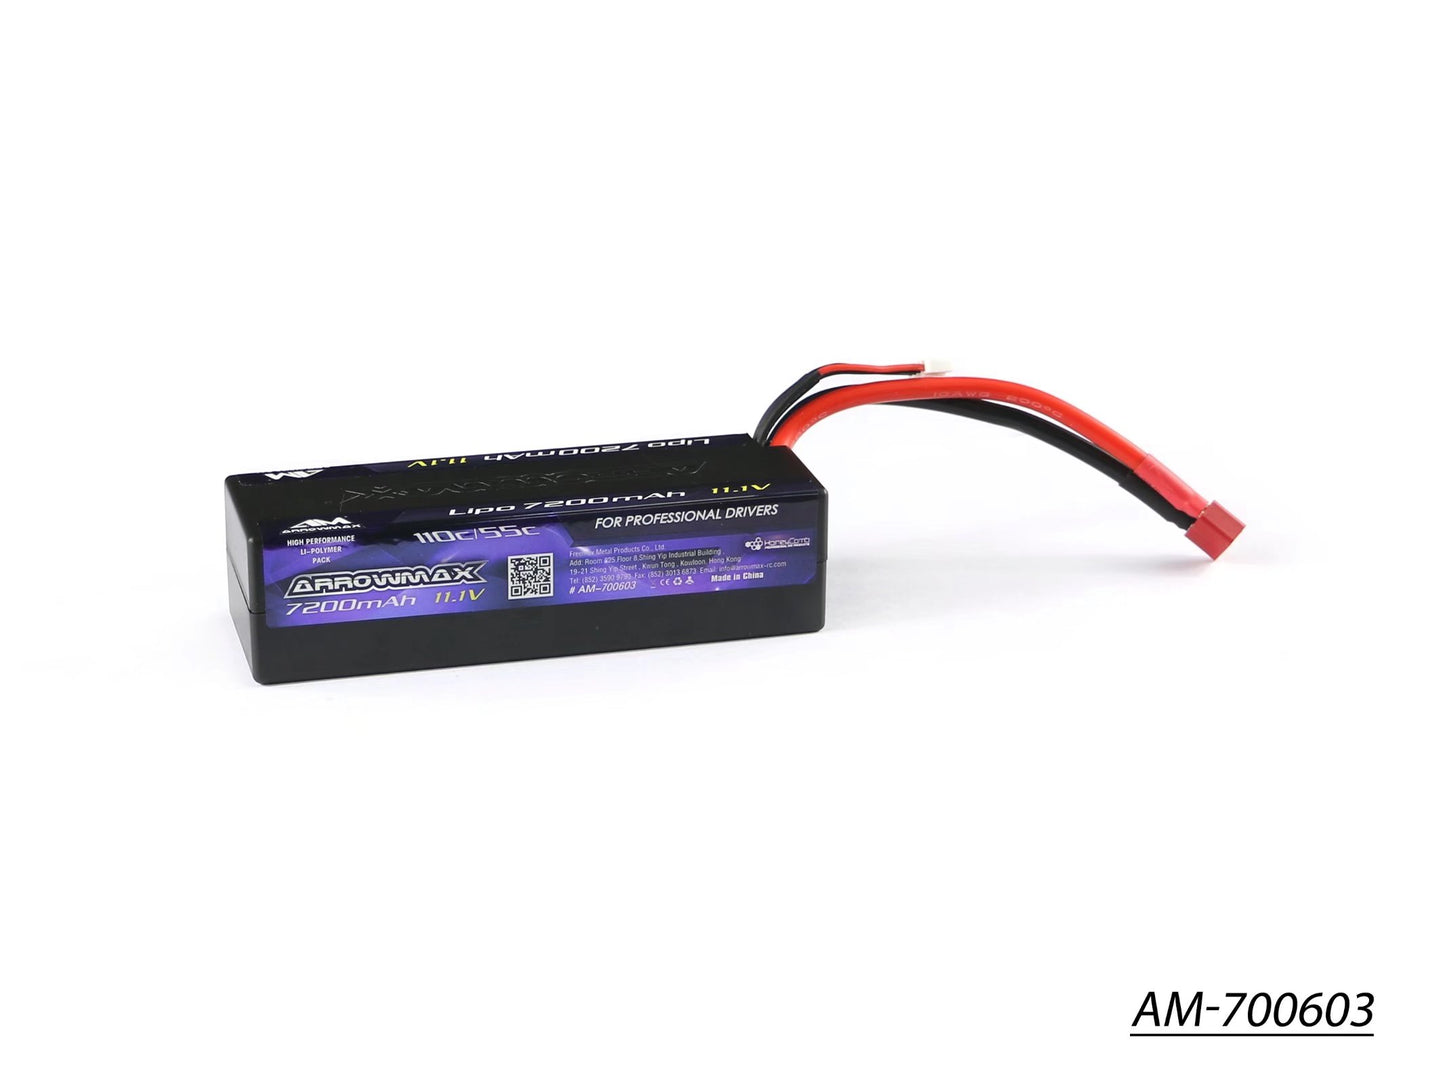 AM Lipo 7200mAh 3S - 11.1V 55C Continuous 110C Burst wire with Deans (AM-700603)